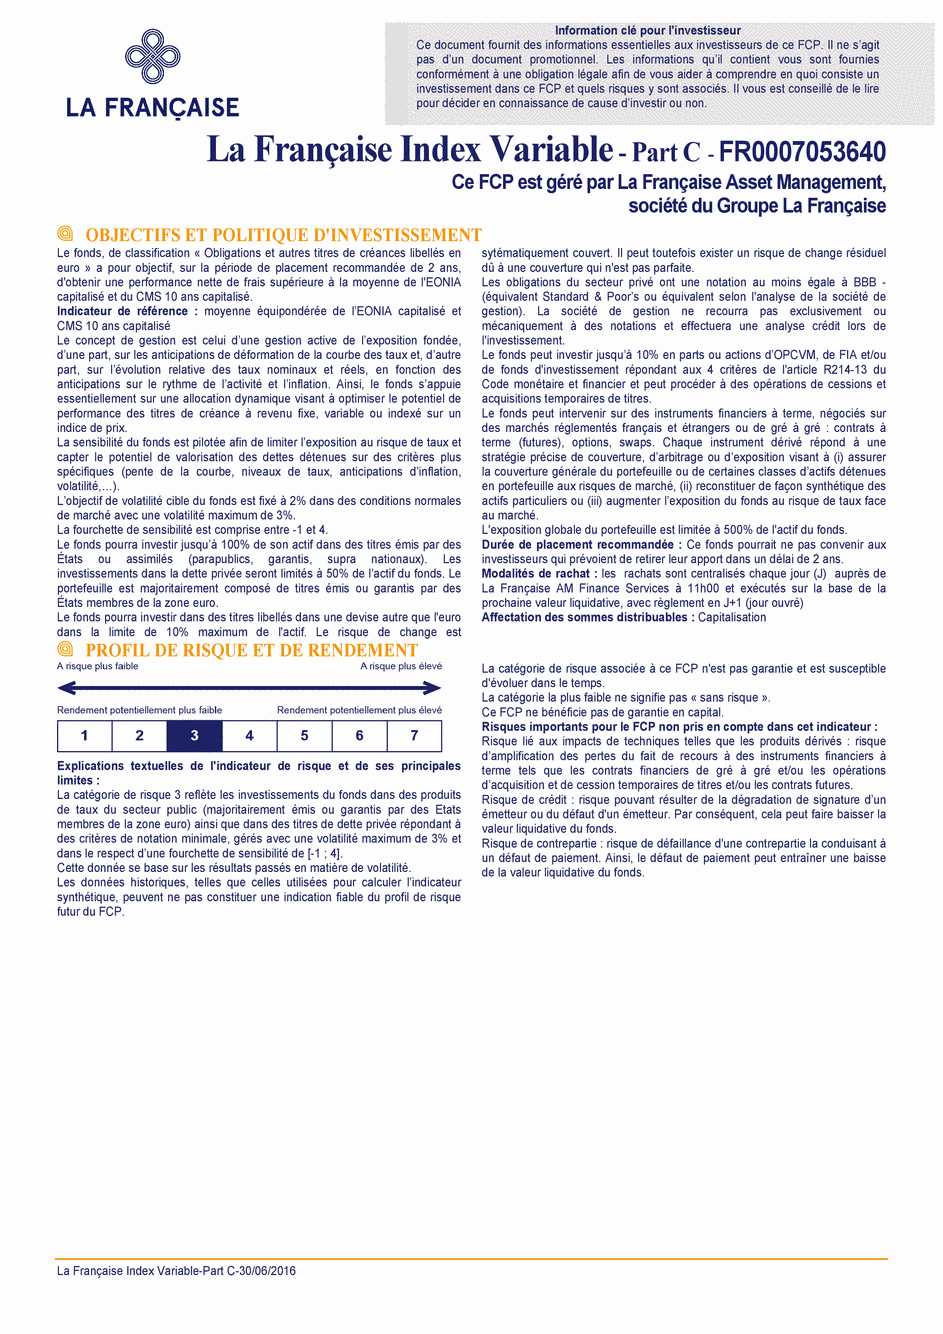 DICI La Française Moderate Multibonds - Part C - 30/06/2016 - Français